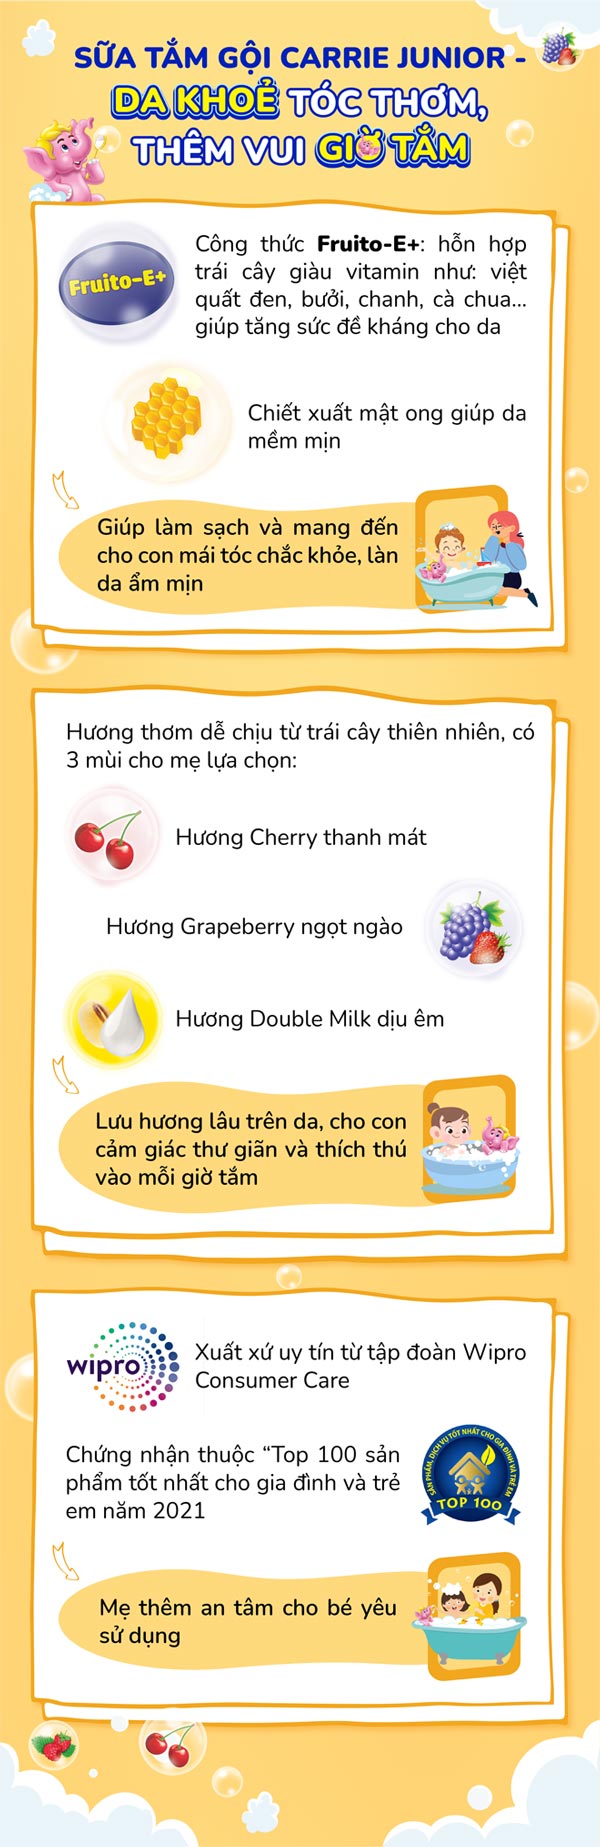 Nghe hot mom Trang Lou chia sẻ các tips giúp con luôn năng động, hoạt bát trong mùa giãn cách - 4